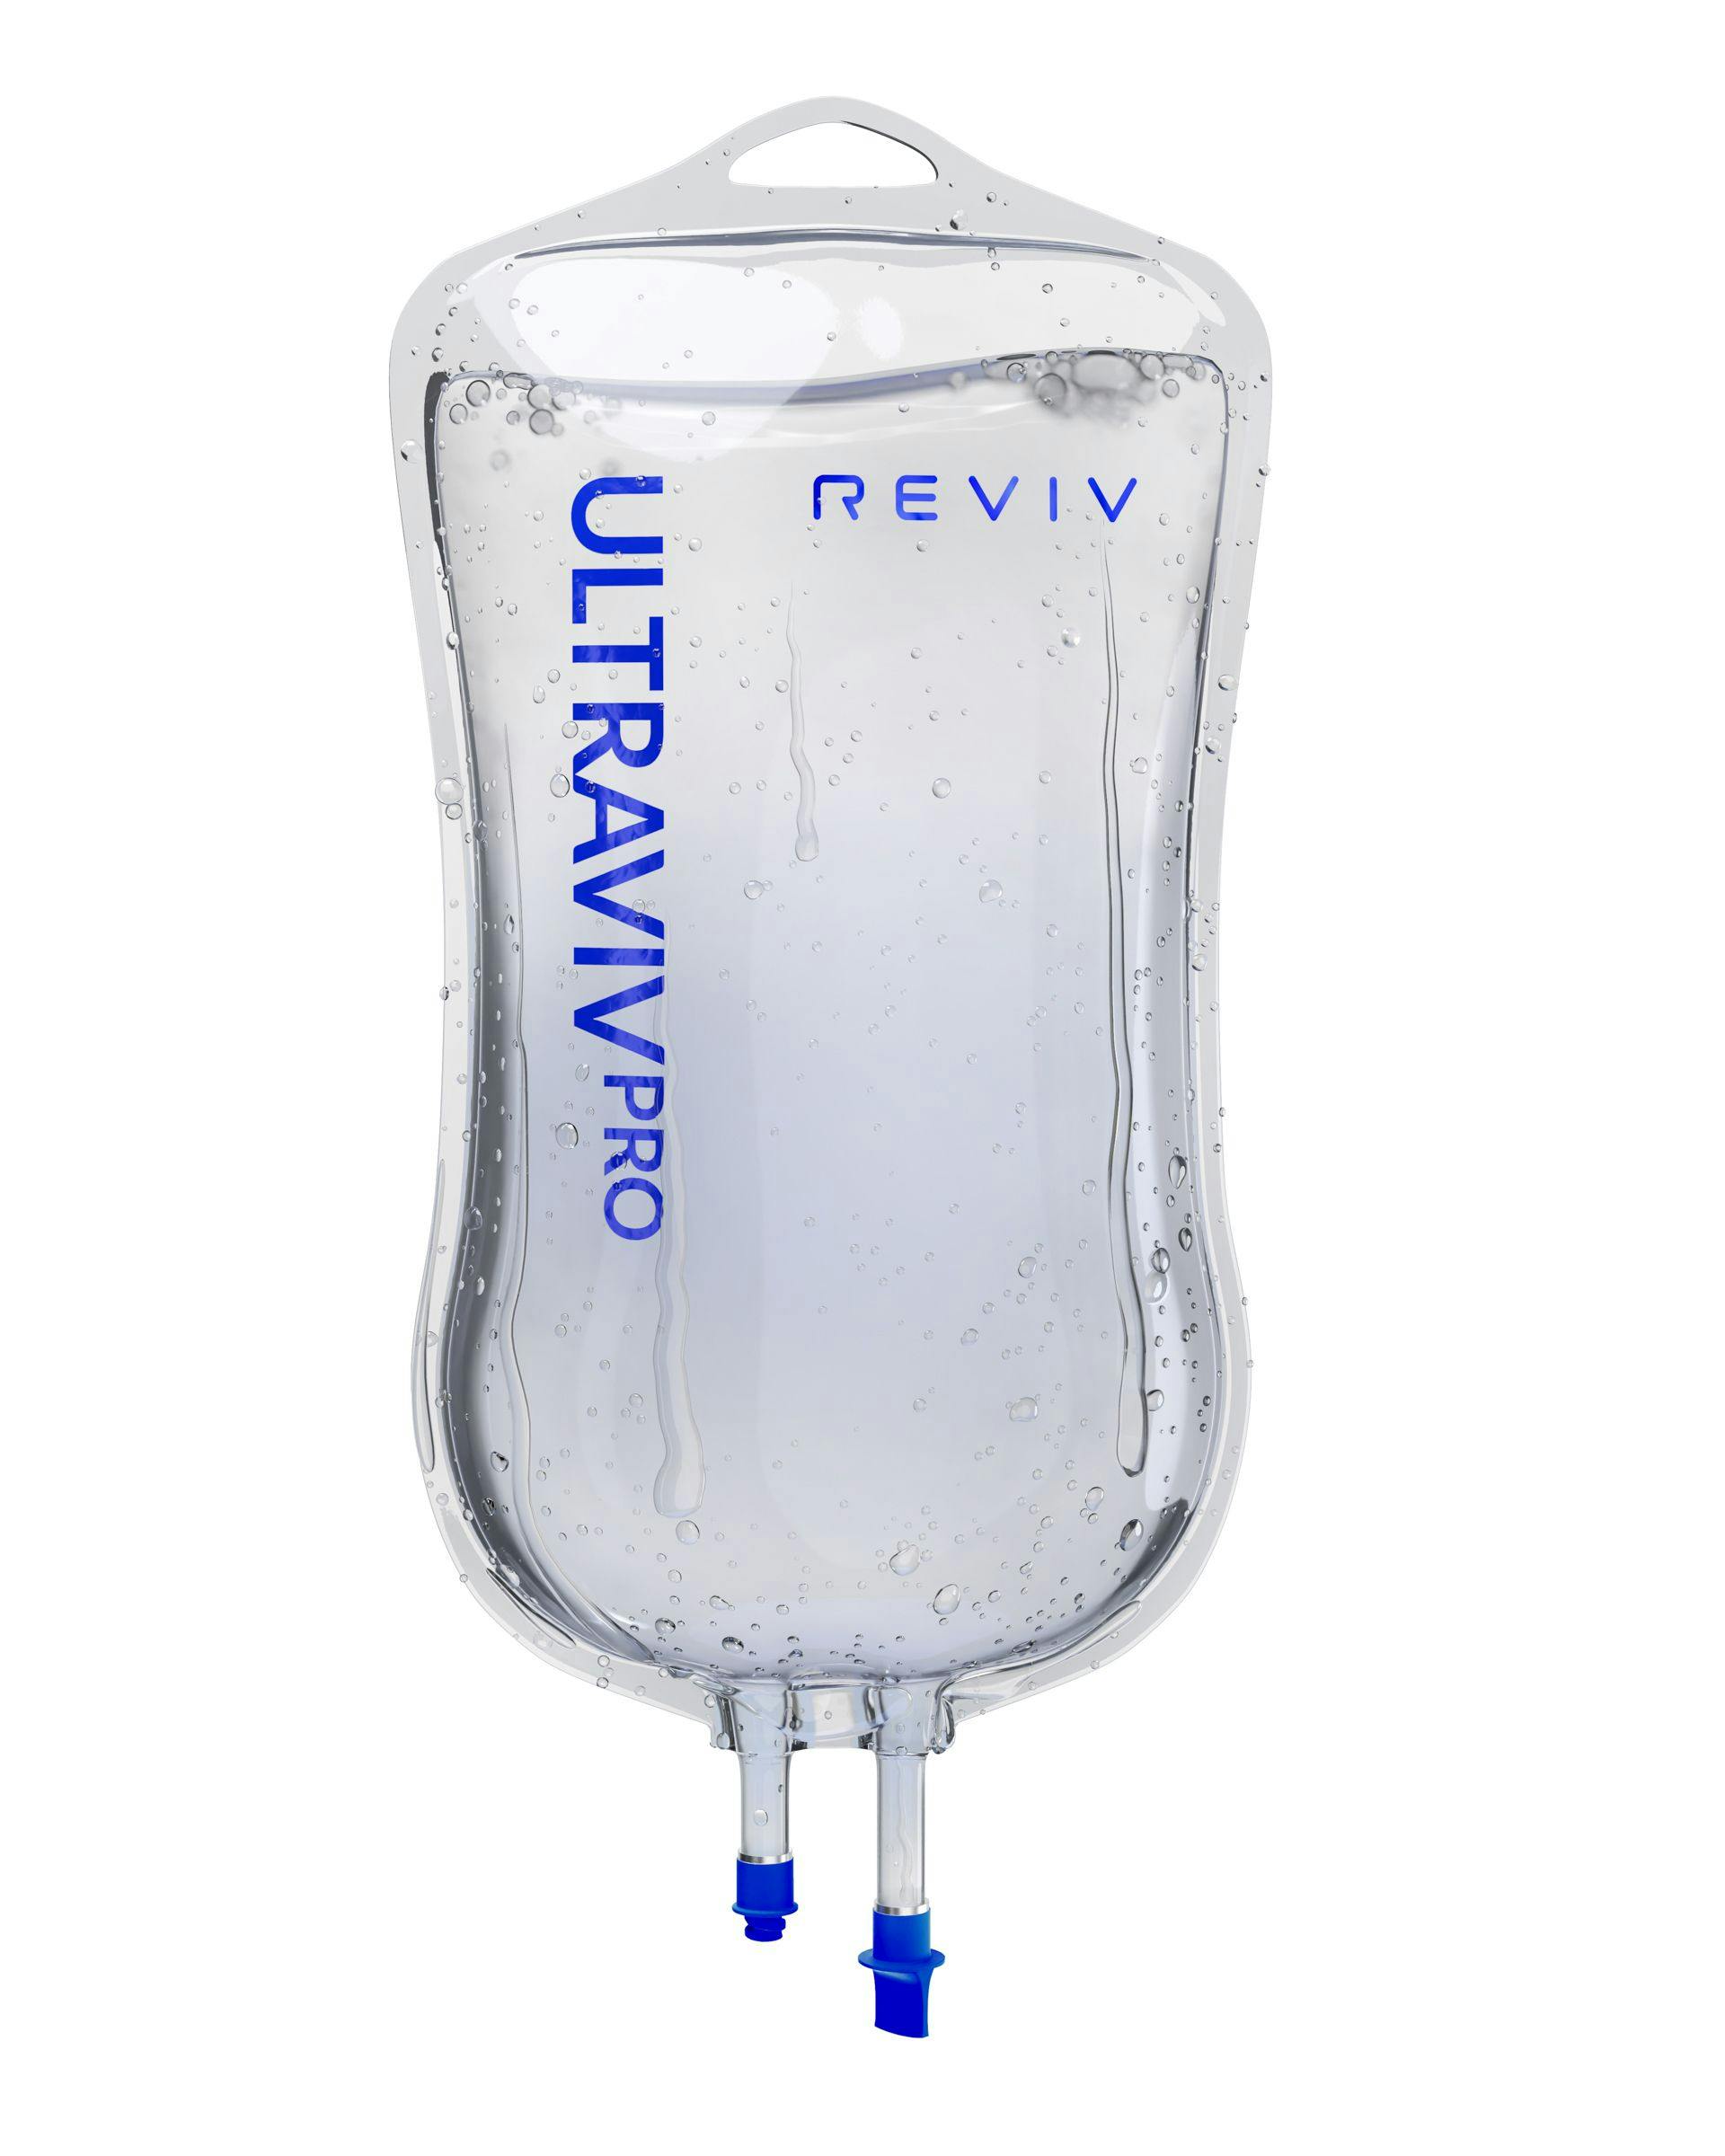 REVIV IV Bag Front Ultraviv Pro